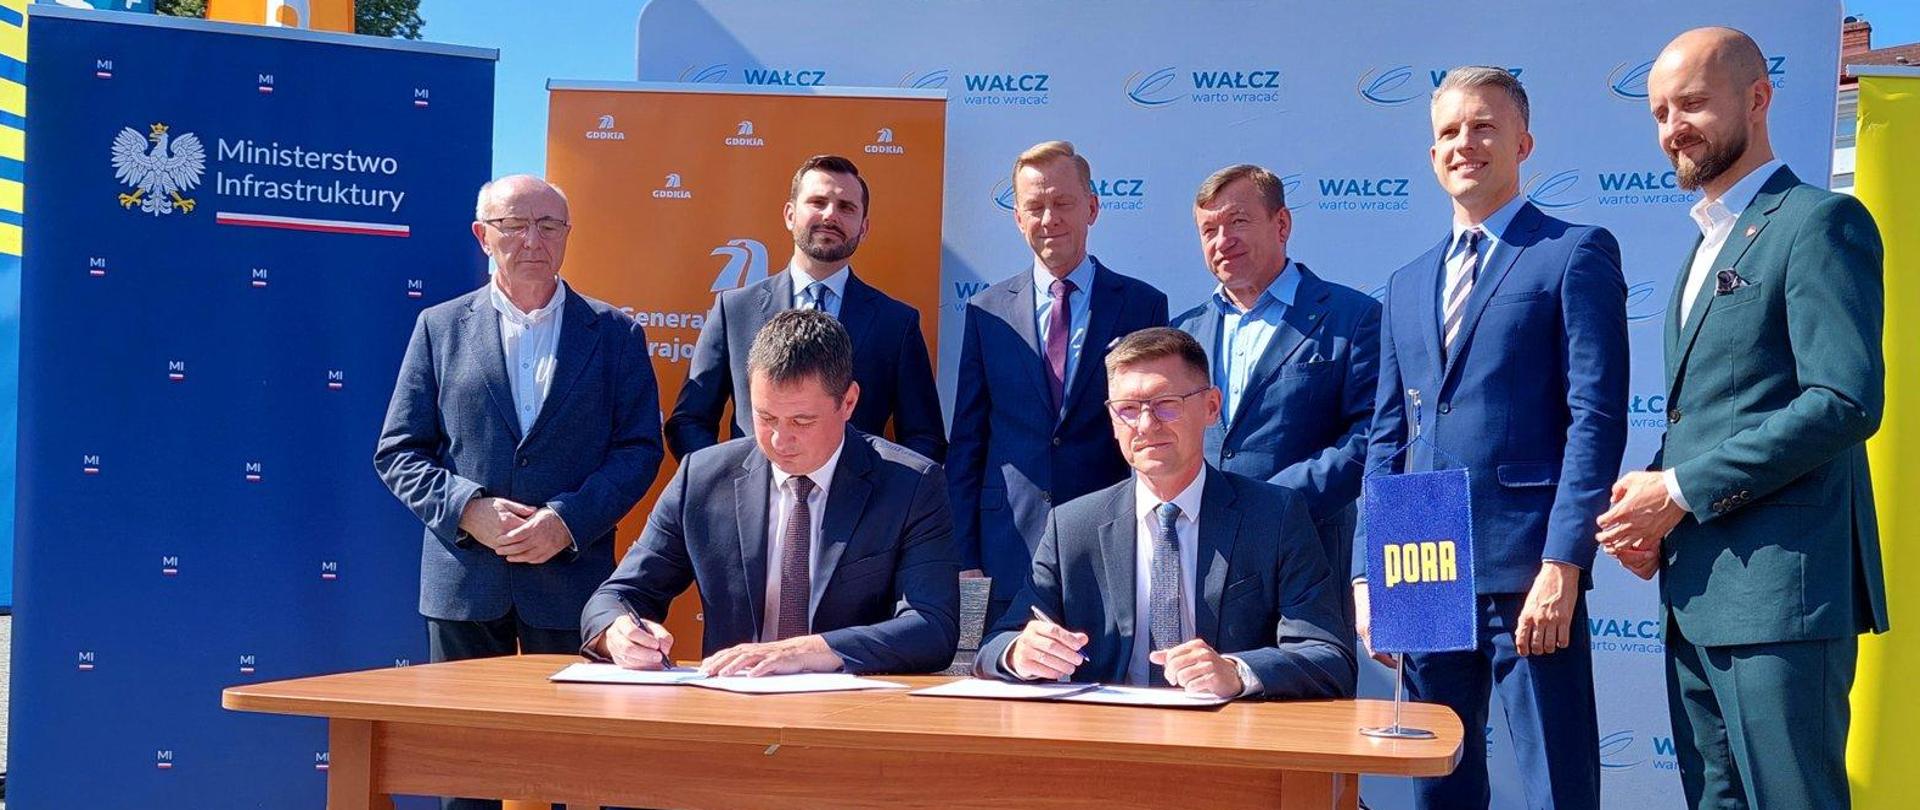 Generalna Dyrekcja Dróg Krajowych i Autostrad zawarła umowę na realizację obwodnicy Wałcza w ciągu drogi krajowej nr 22